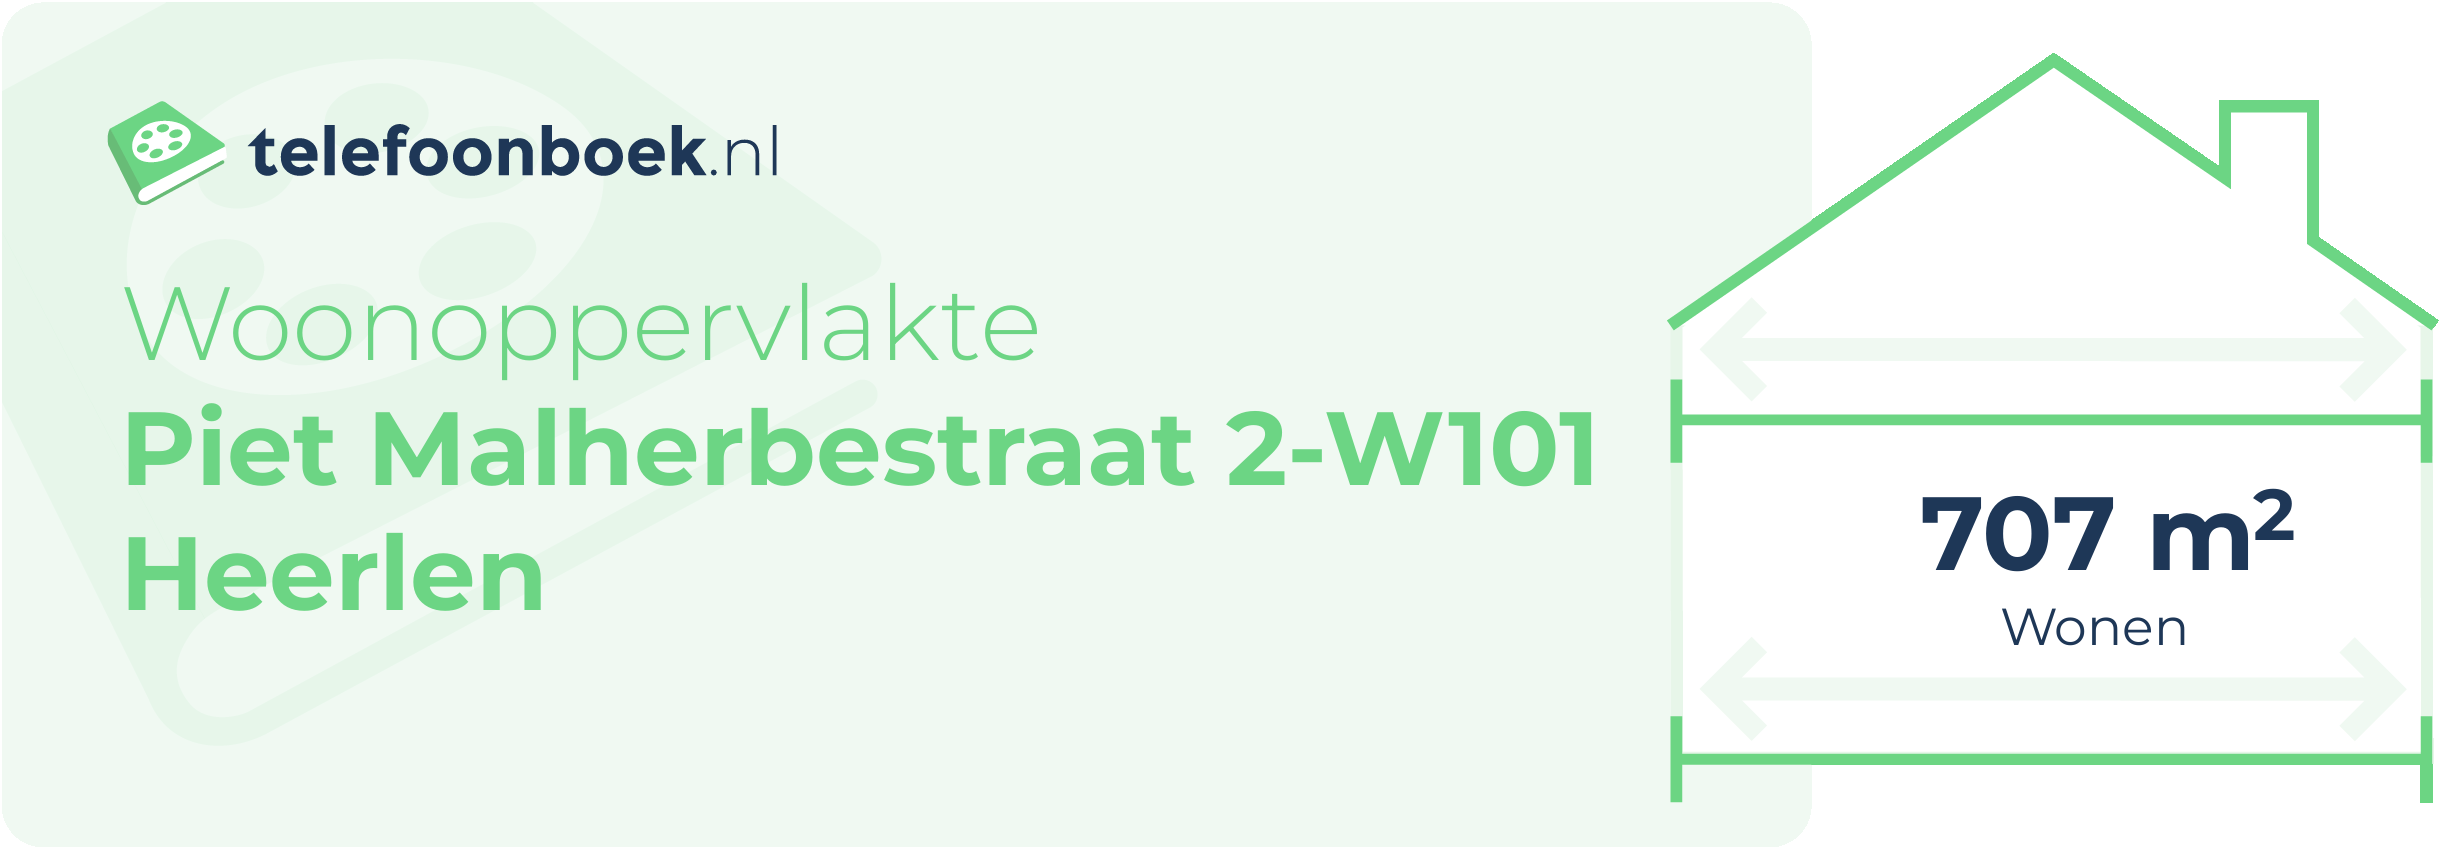 Woonoppervlakte Piet Malherbestraat 2-W101 Heerlen